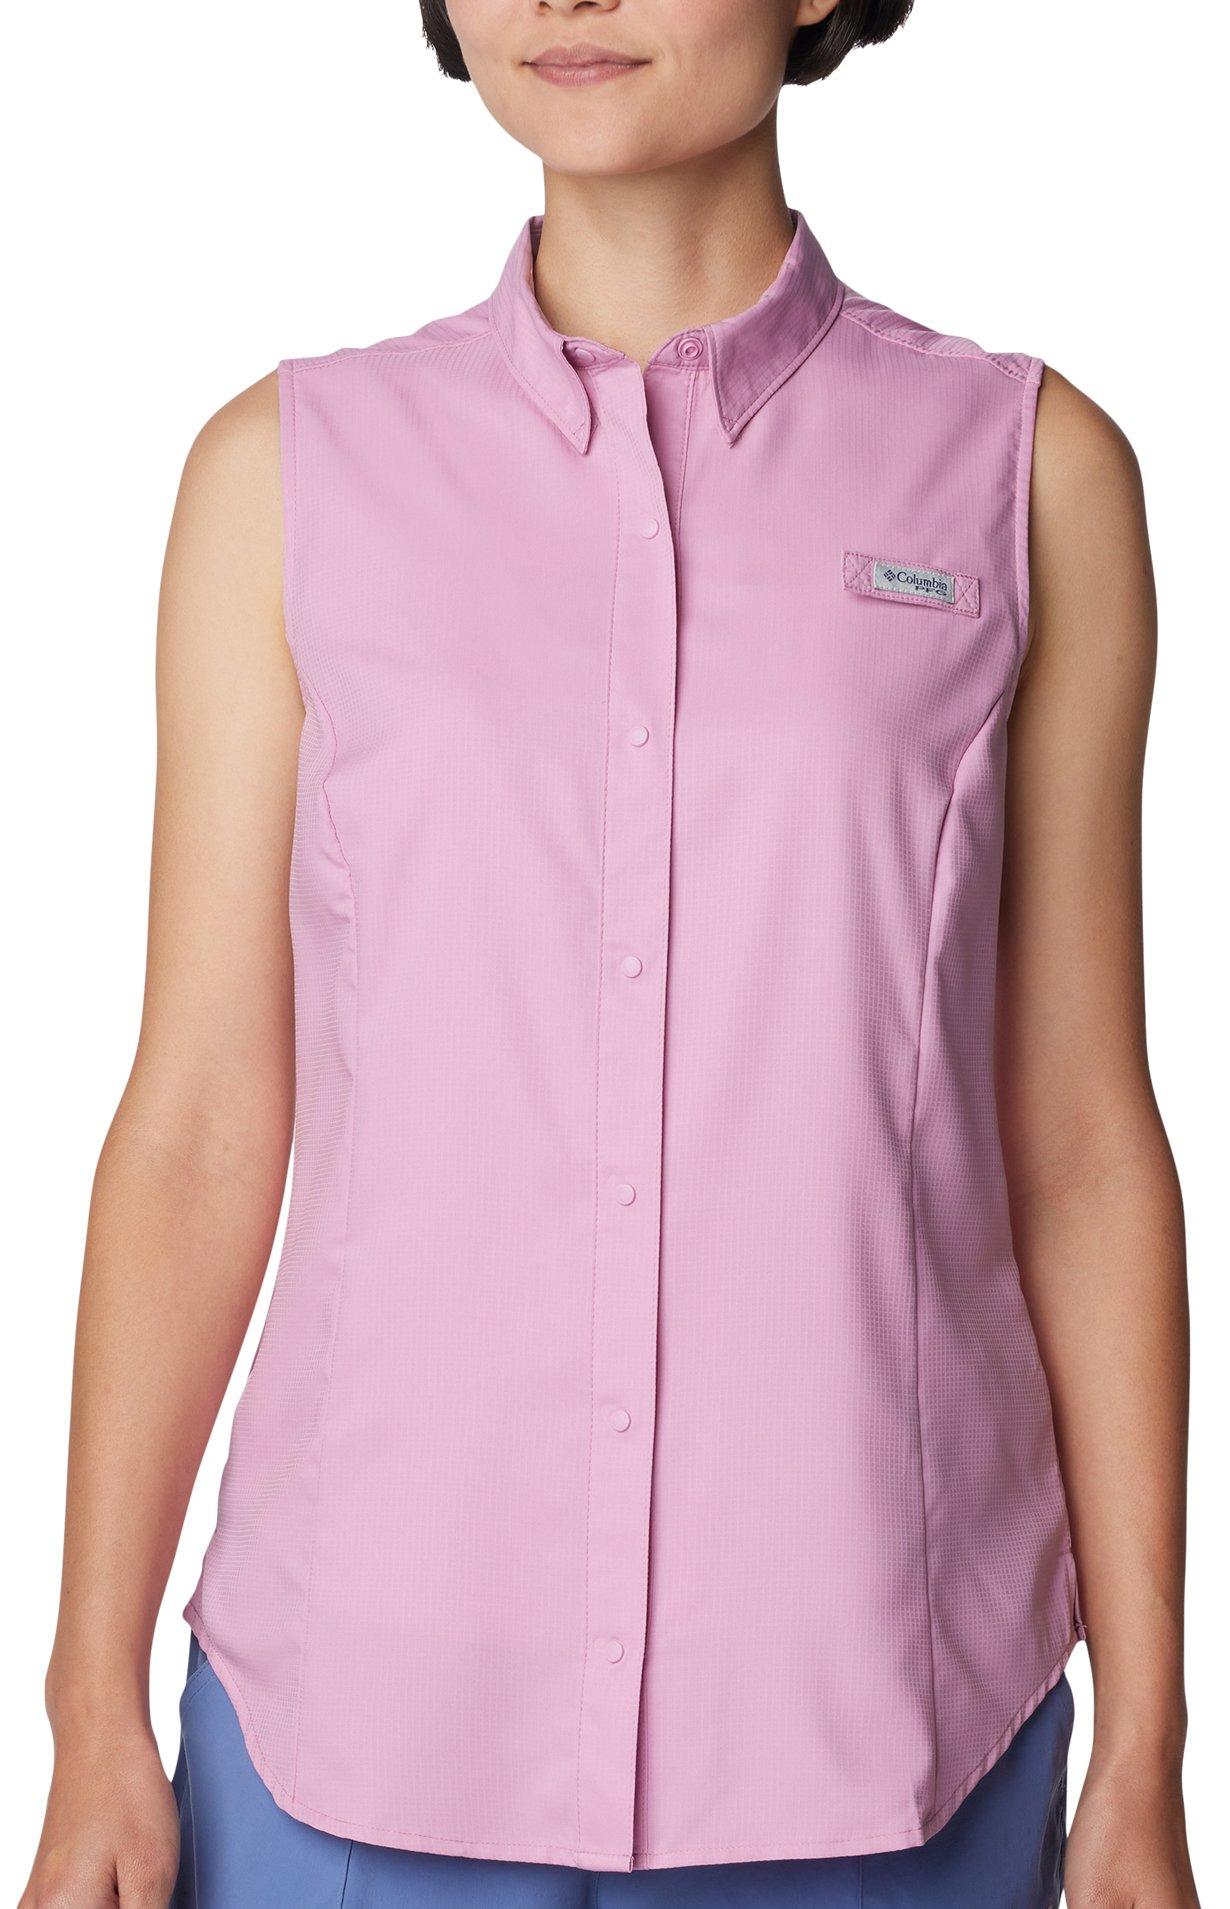 Womens PFG Tamiami Sleeveless Shirt